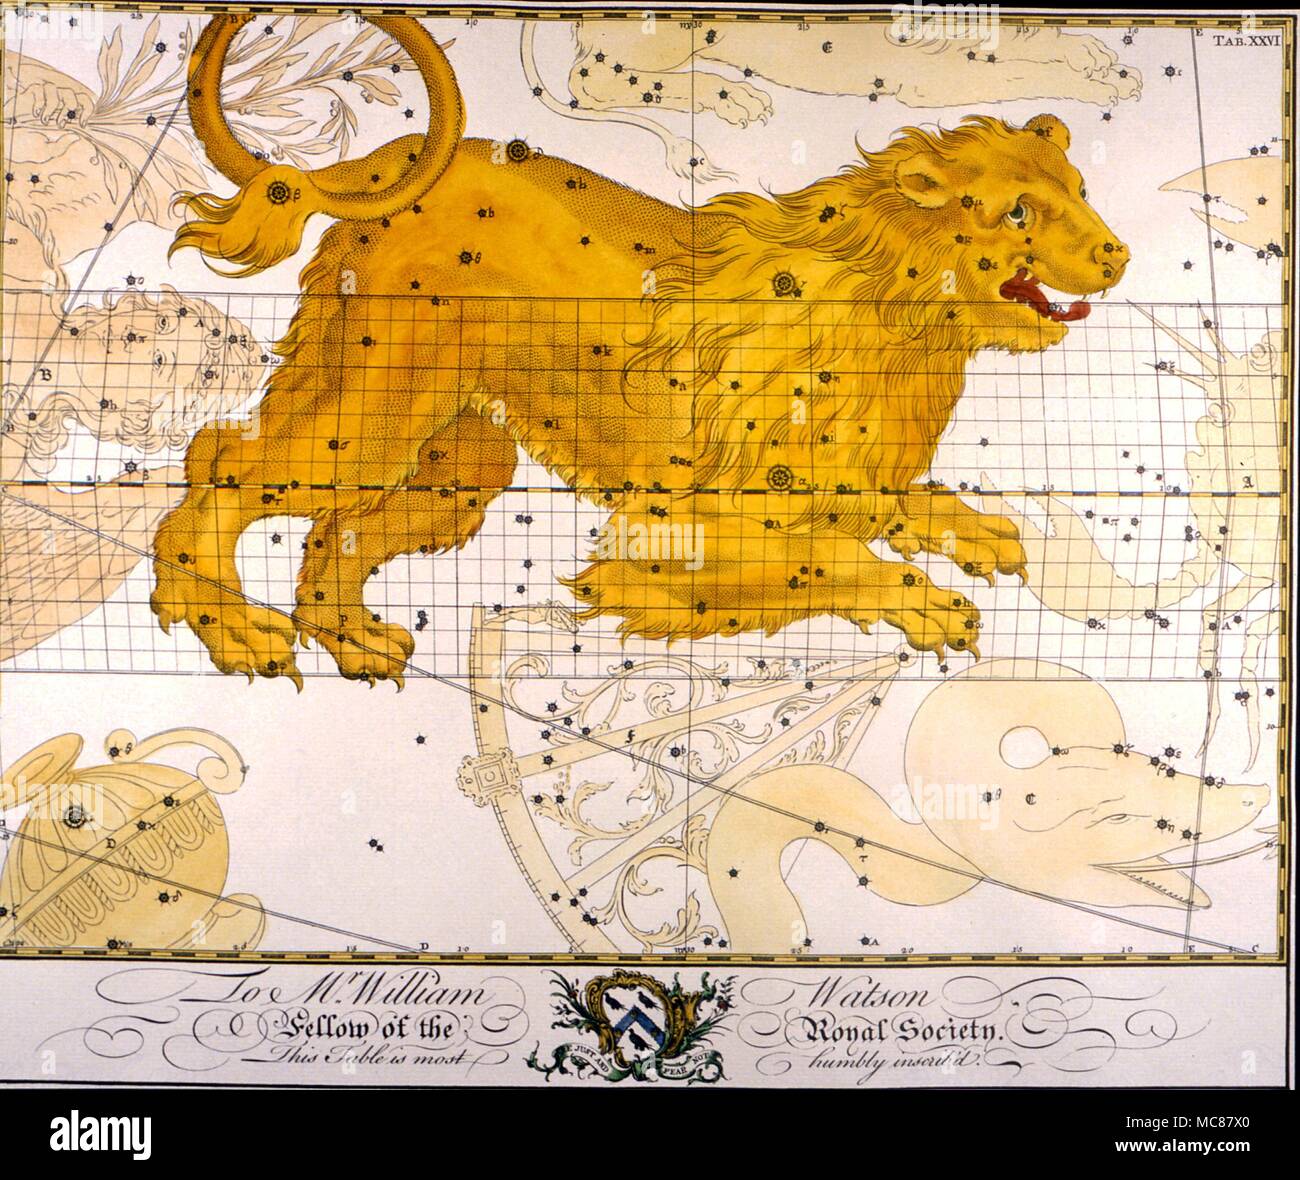 Sternbilder und Sterne Karten Leo ein loses Ende des 18. Jahrhunderts Platte von einem englischen Abonnement Buch der Konstellation Charts Stockfoto